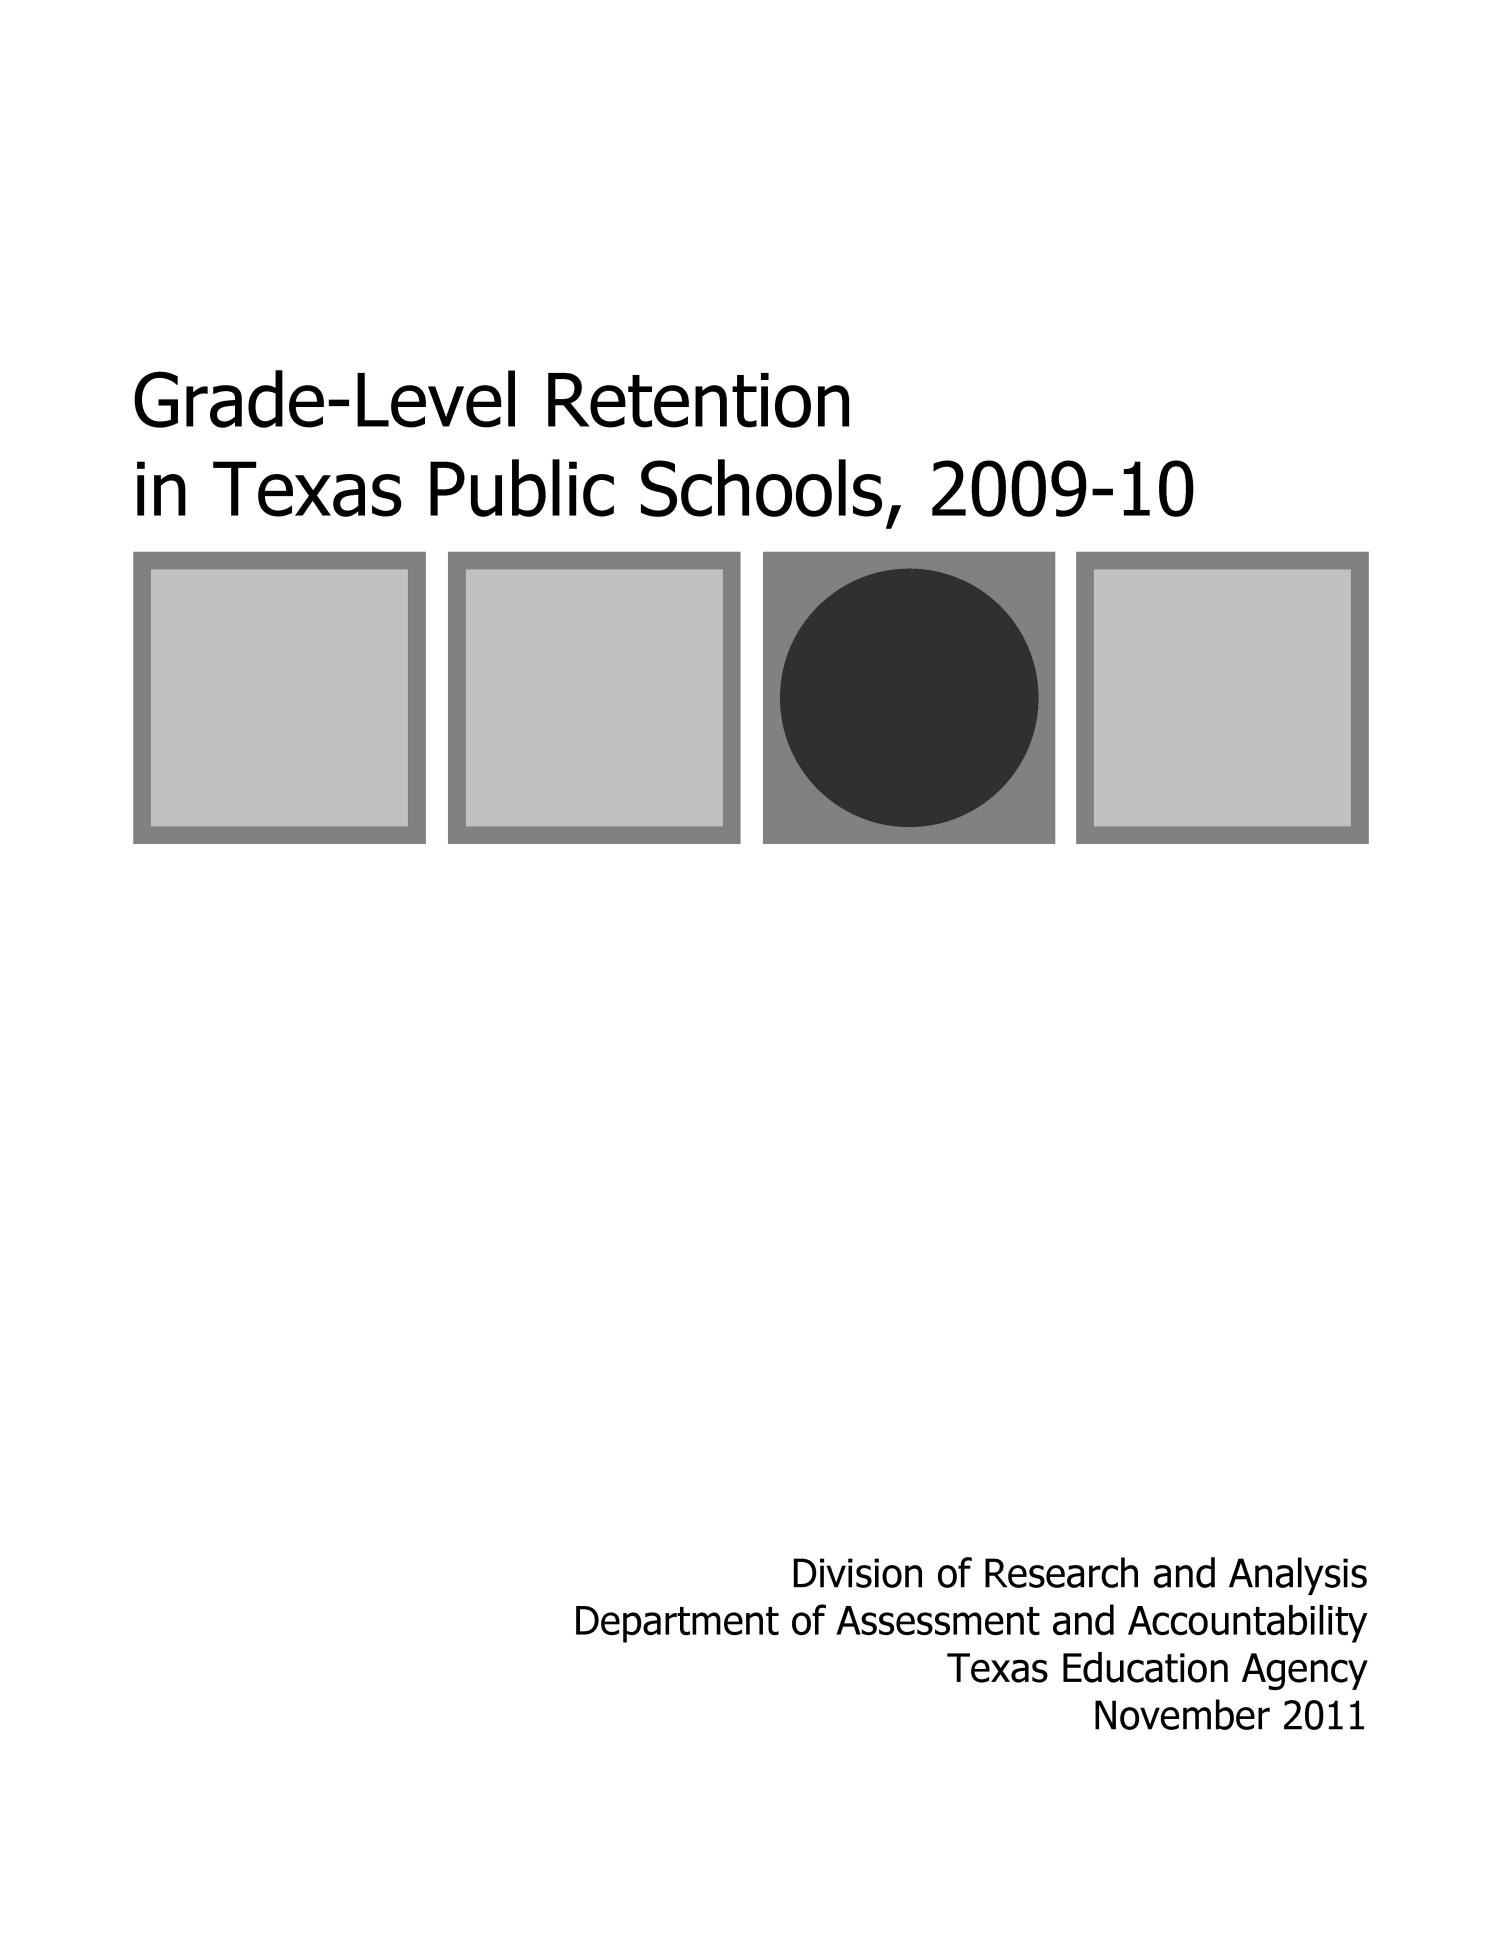 GradeLevel Retention in Texas Public Schools, 200910 The Portal to